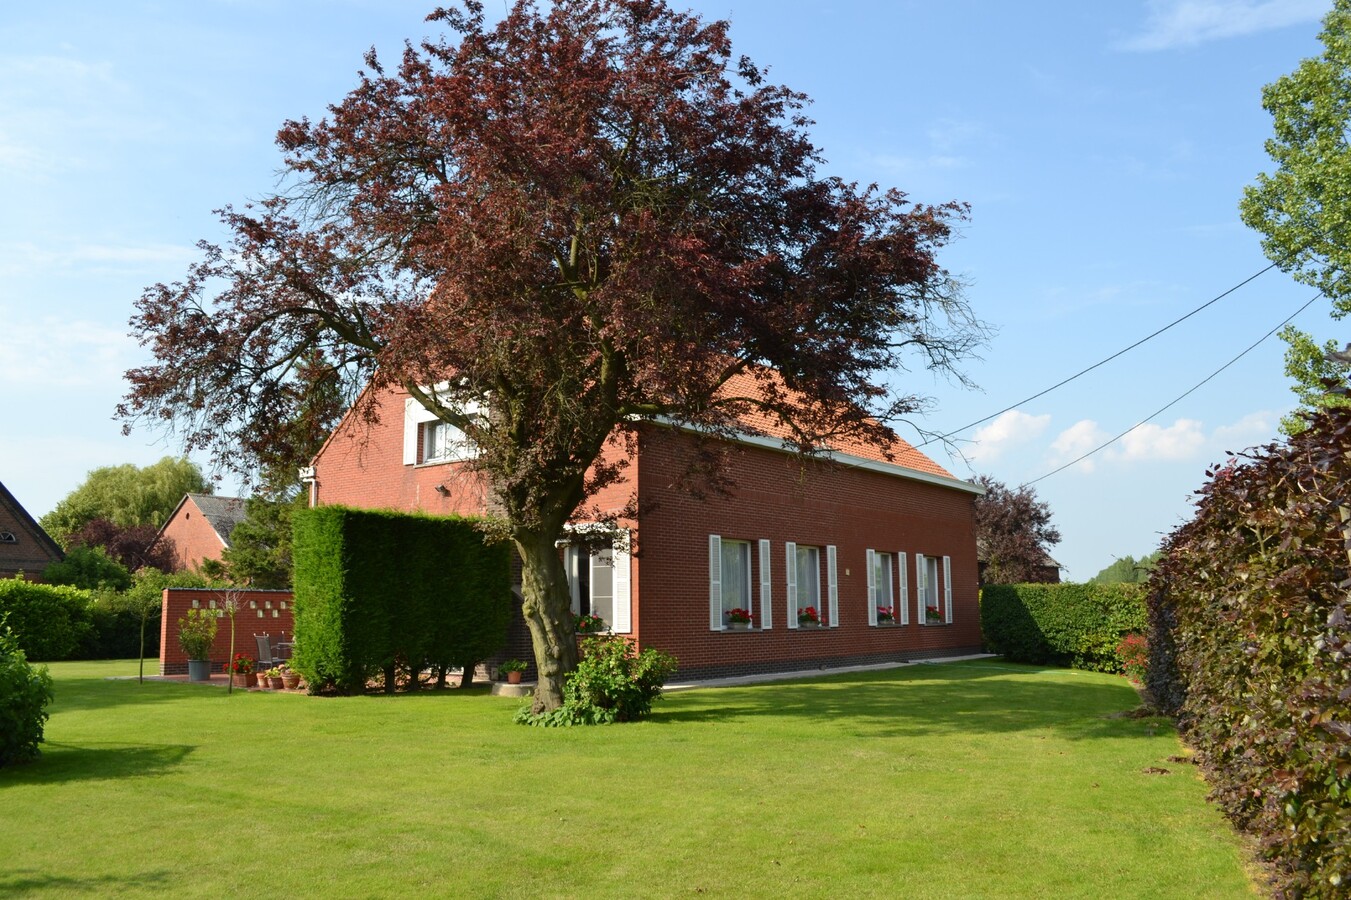 Property sold in Kieldrecht